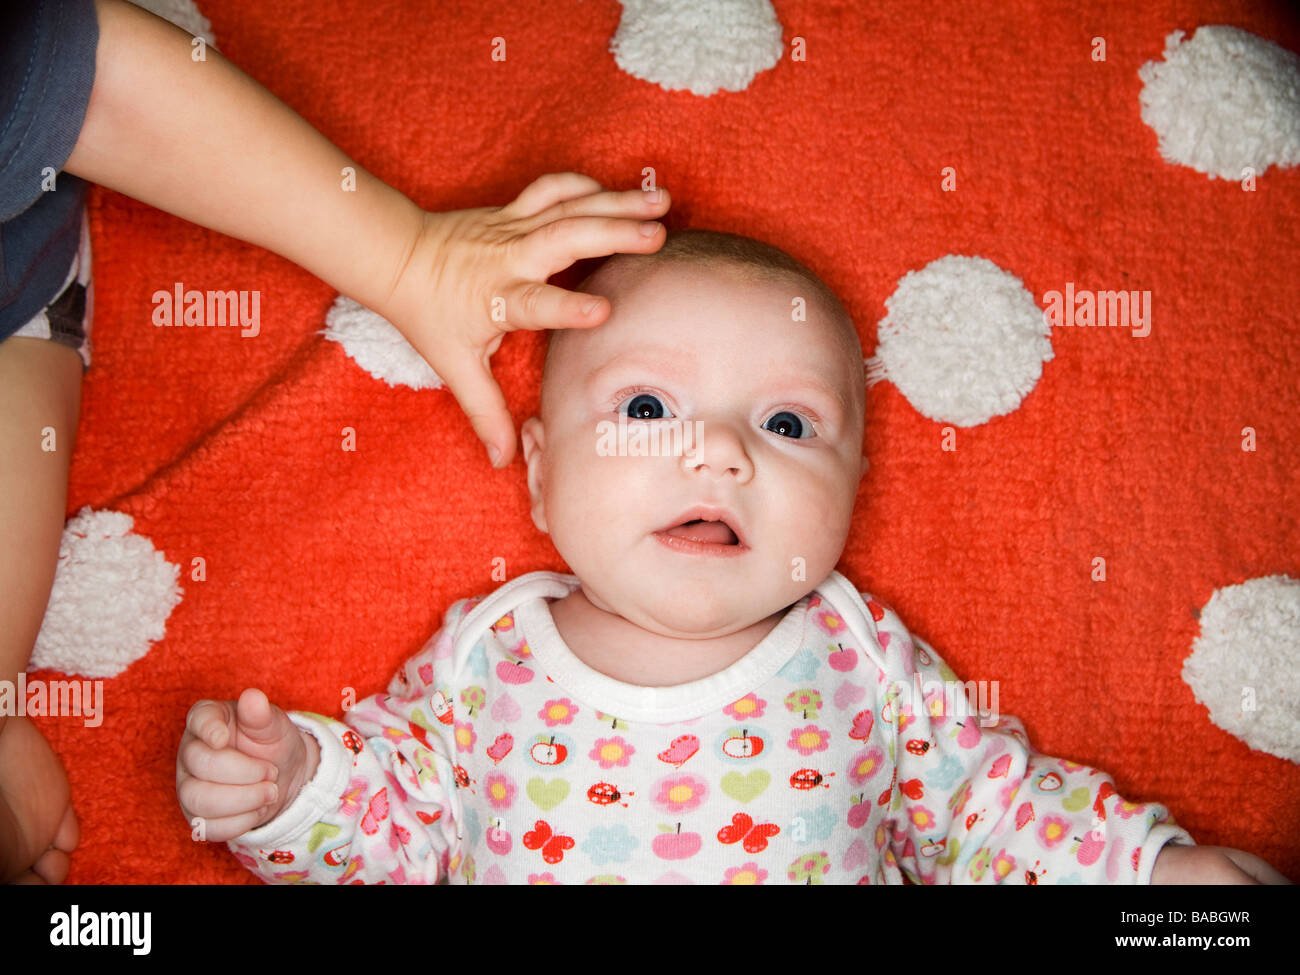 Une petite main tapotant la tête d'un bébé en Suède Banque D'Images